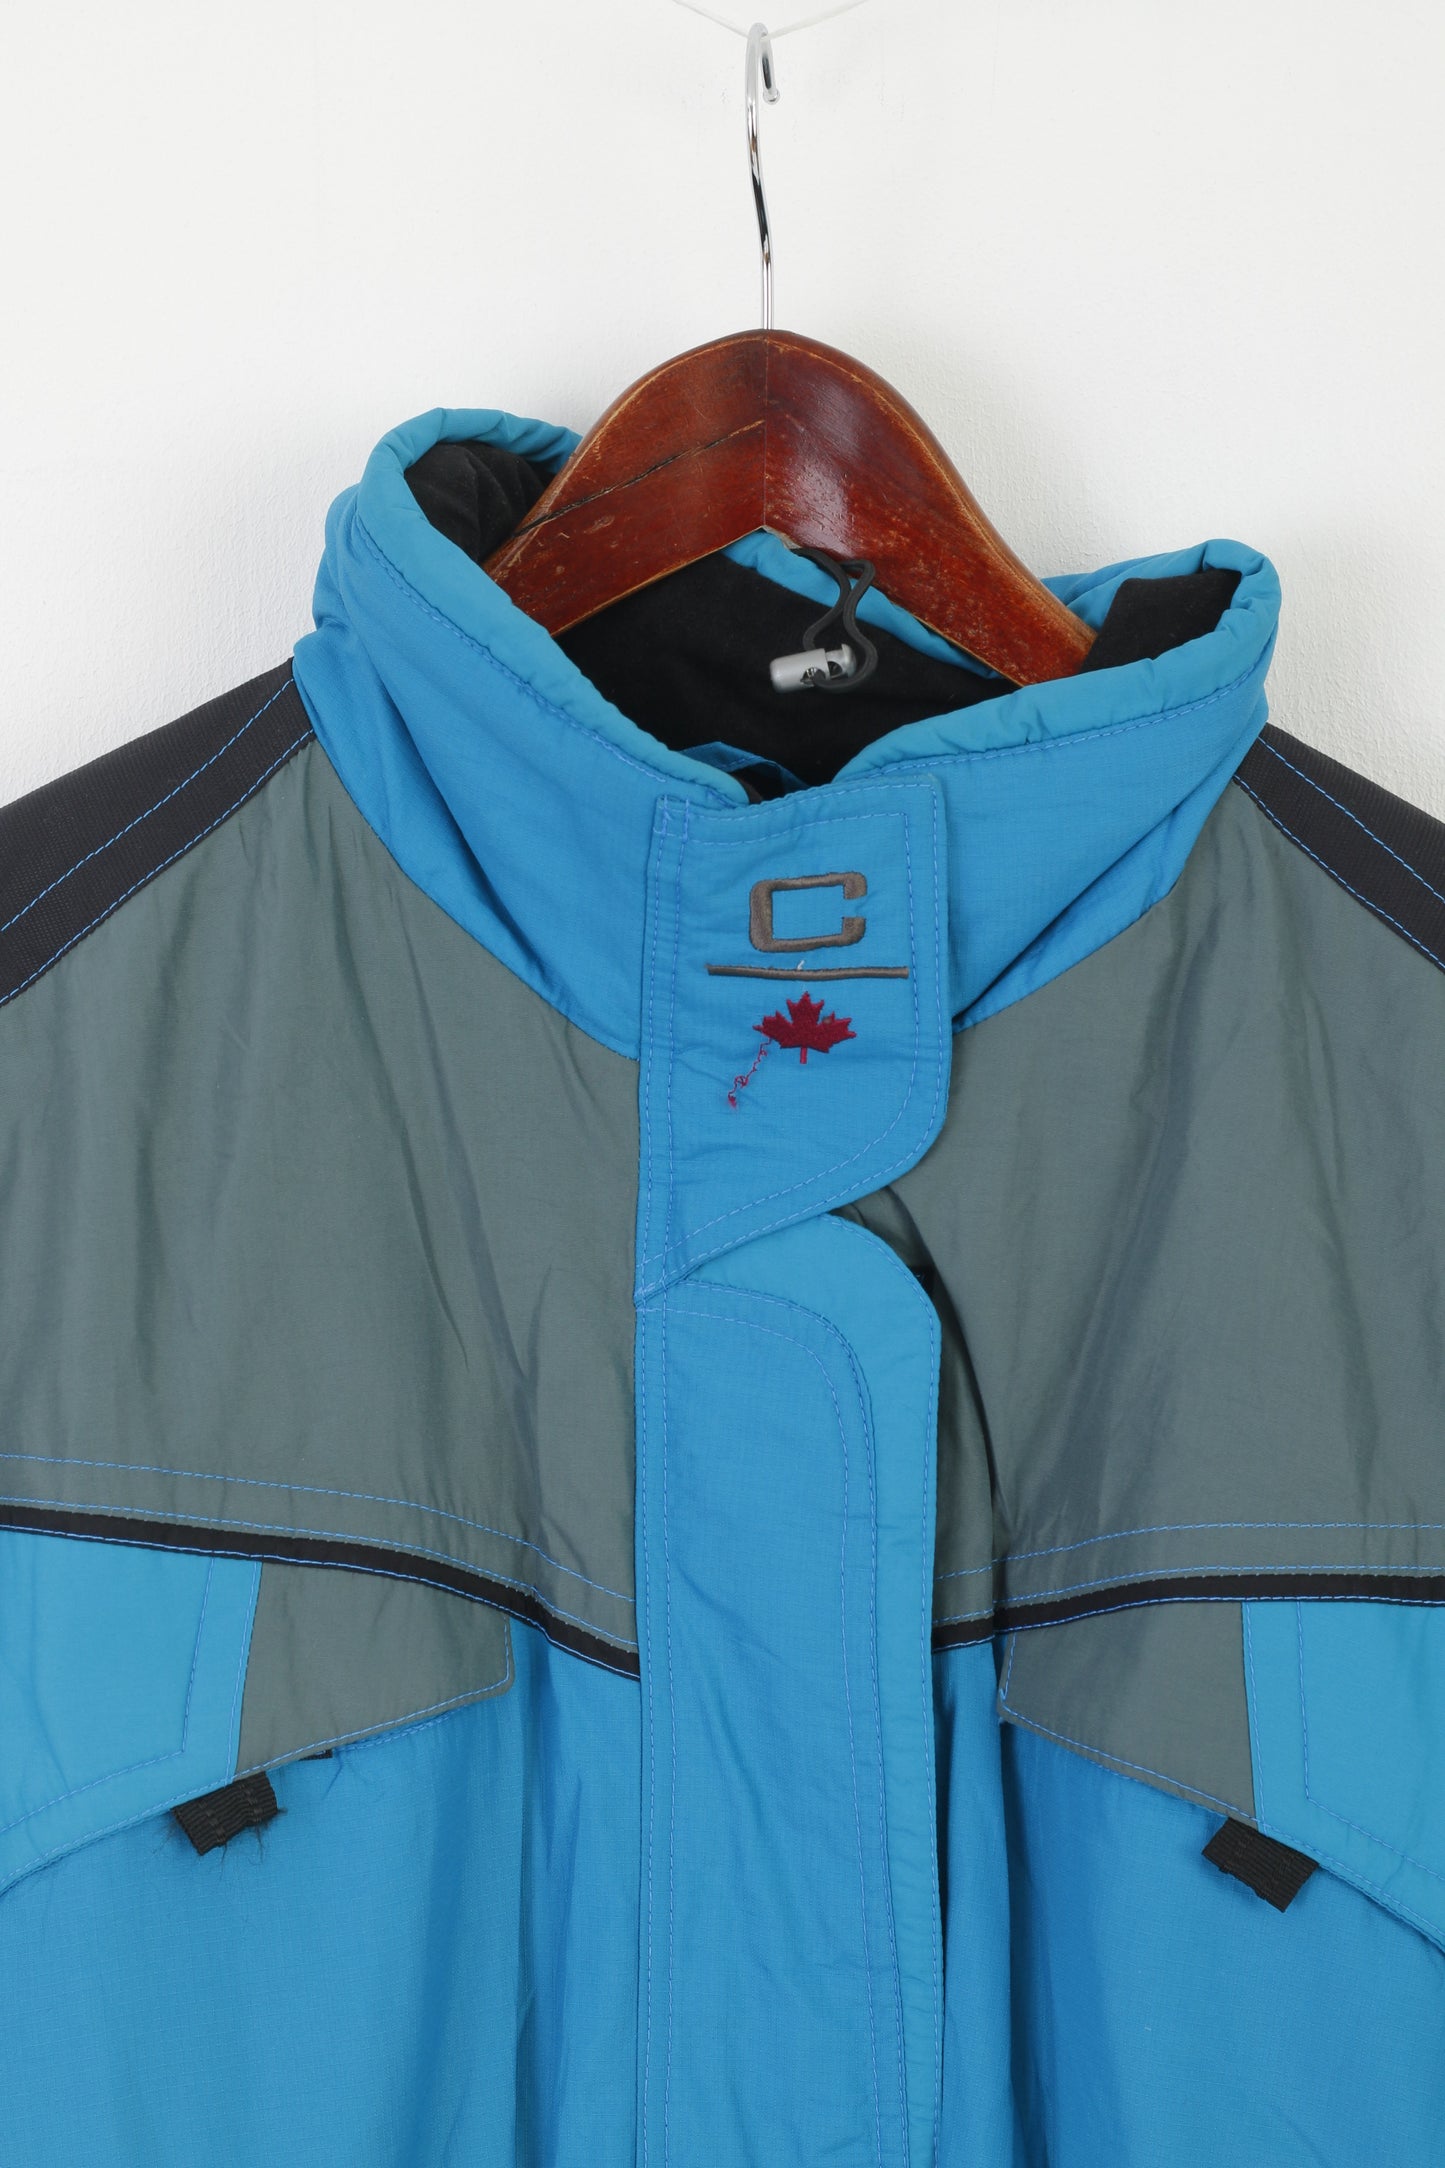 Calmo Sportswear Femme L Combinaison de Ski Bleu Vintage Nylon Capuche Snowboard Combinaison de Neige